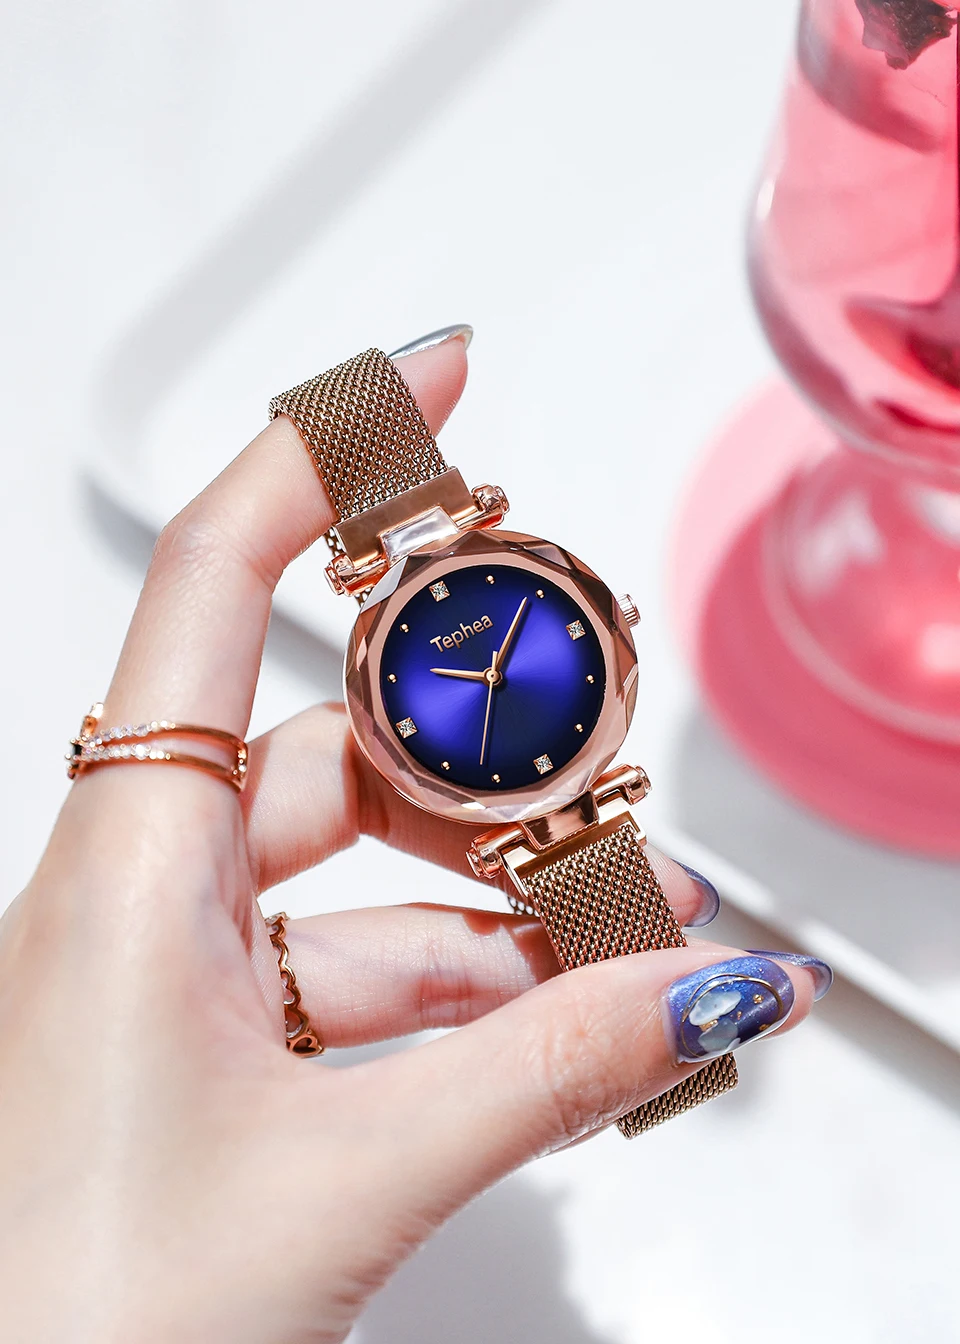 2019 роскошные розовое золото женские часы мода Diamond звездное небо магнит для женщин часы водостойкие женские наручные для подарка